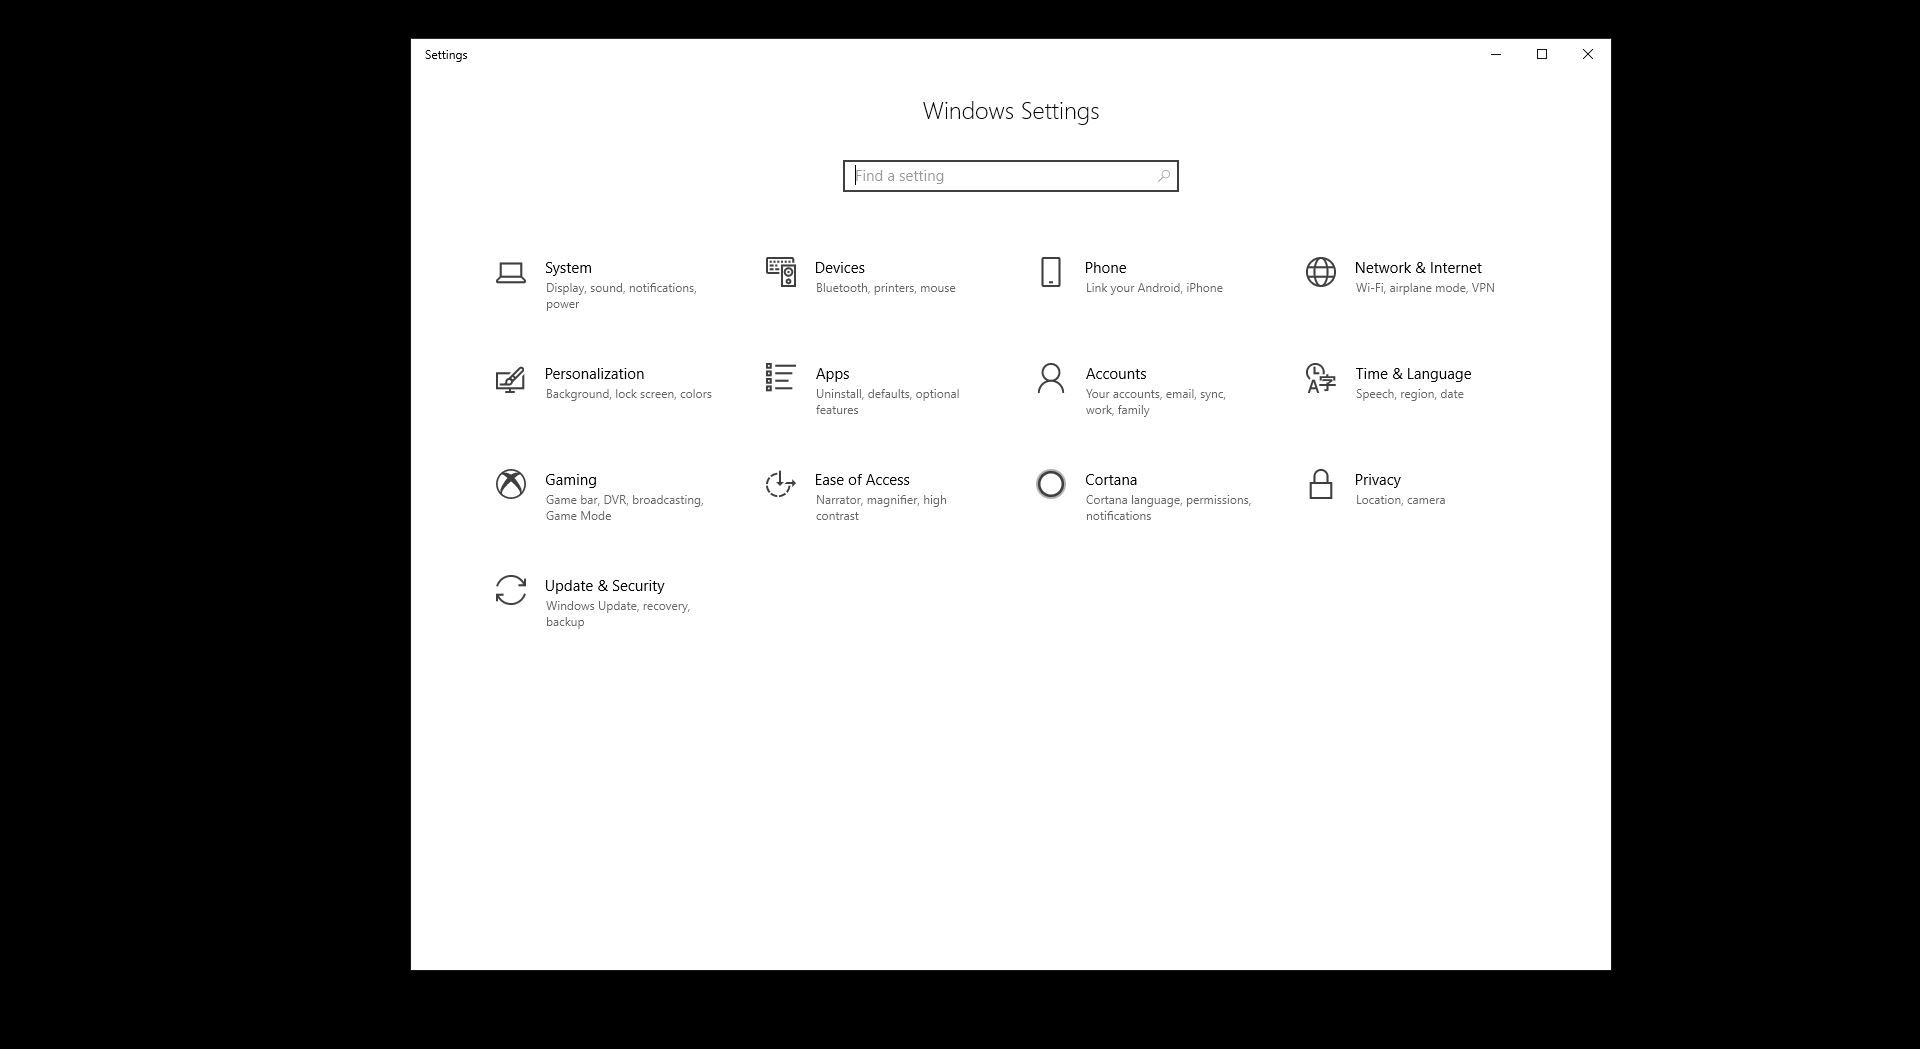 Zobrazení panelu nastavení systému Windows v systému Windows 10.